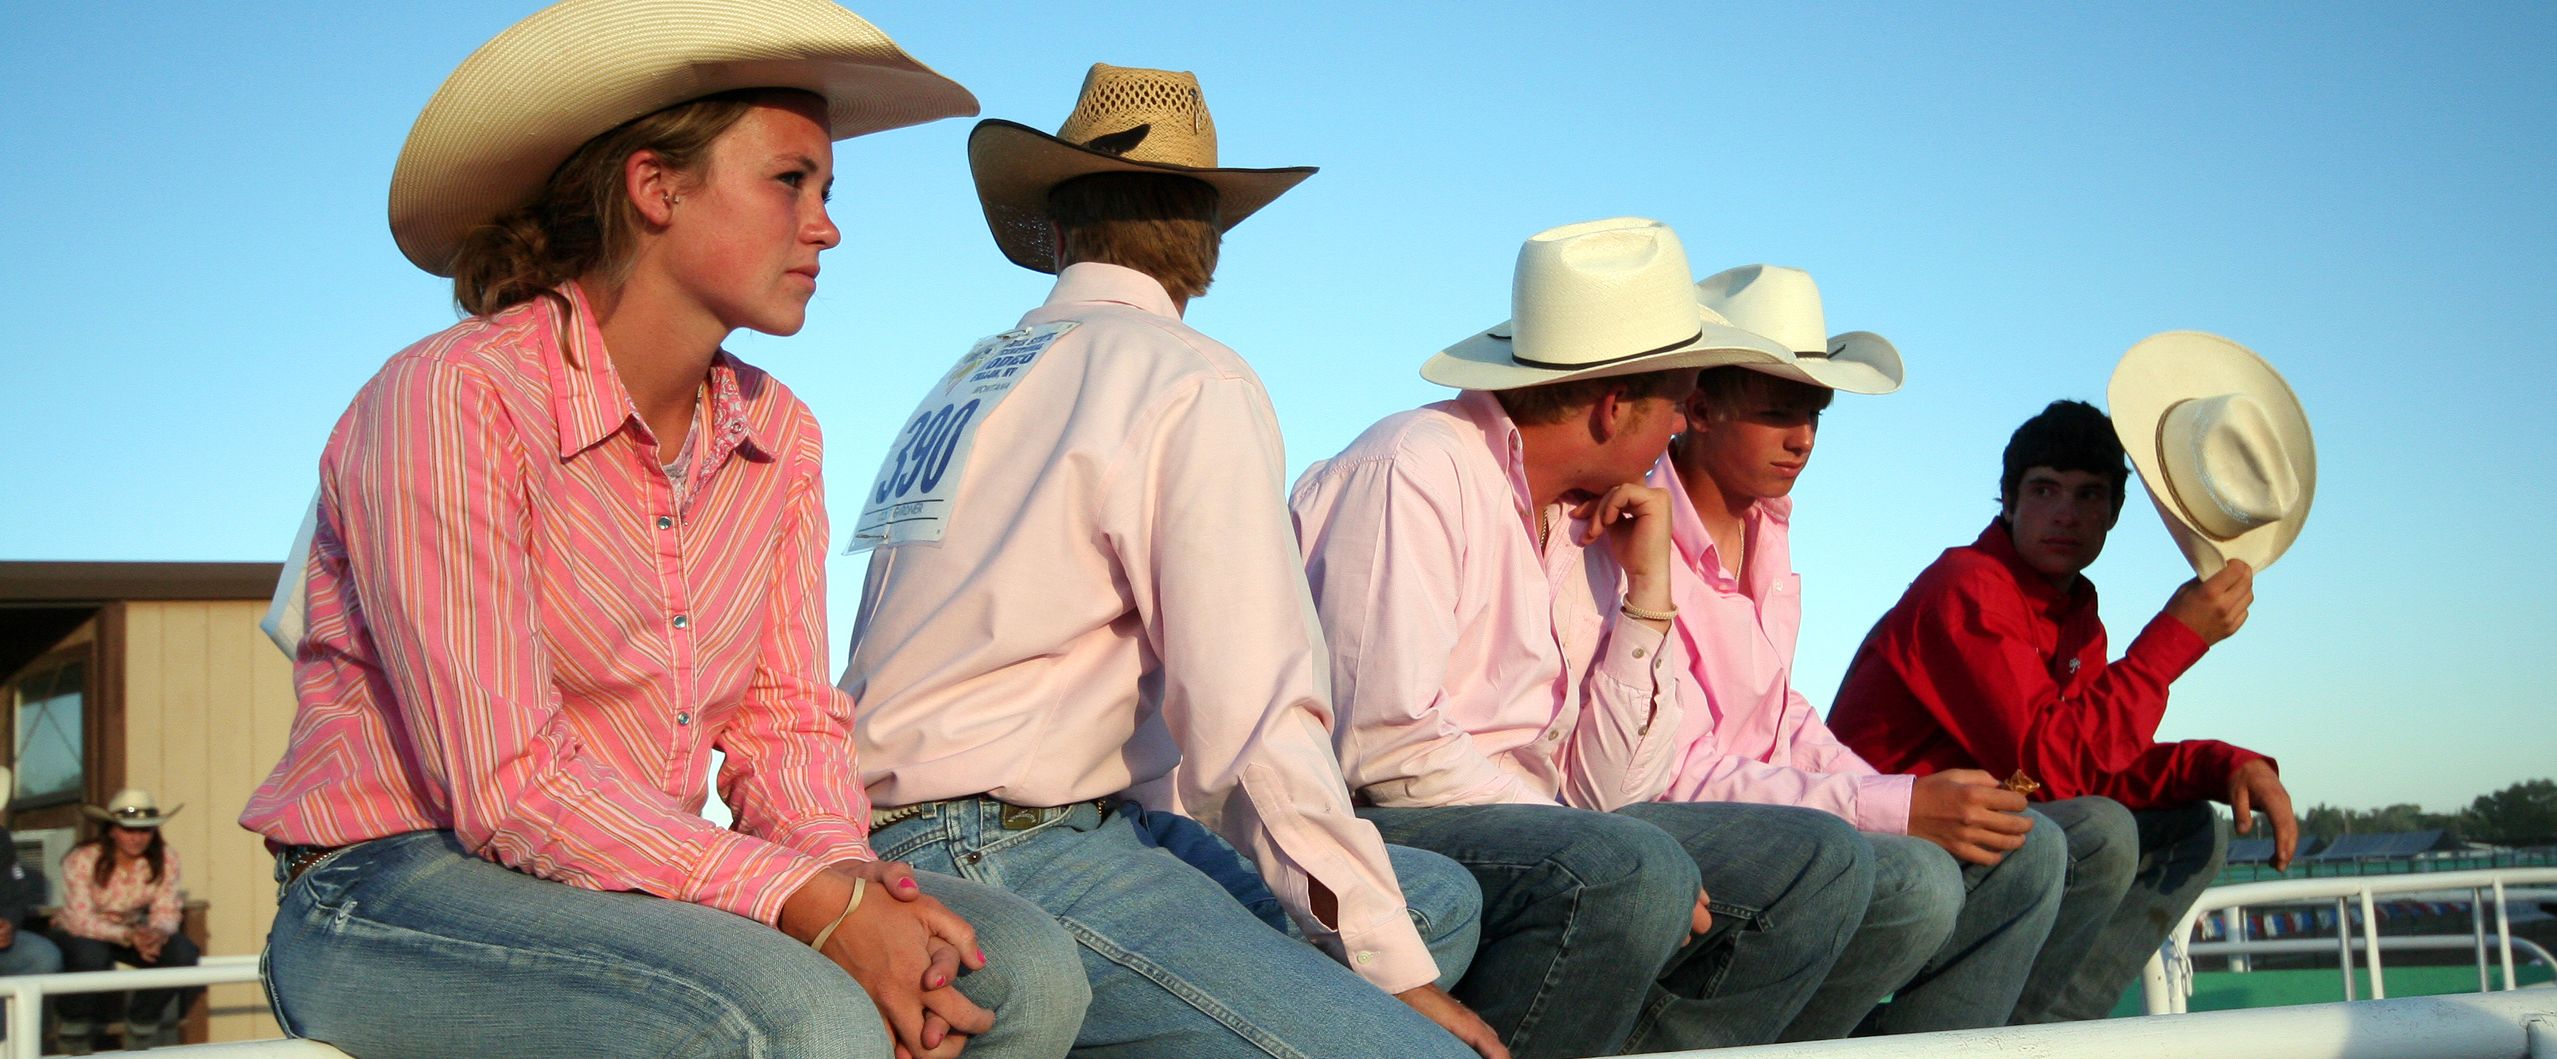 Cowboys in Nevada